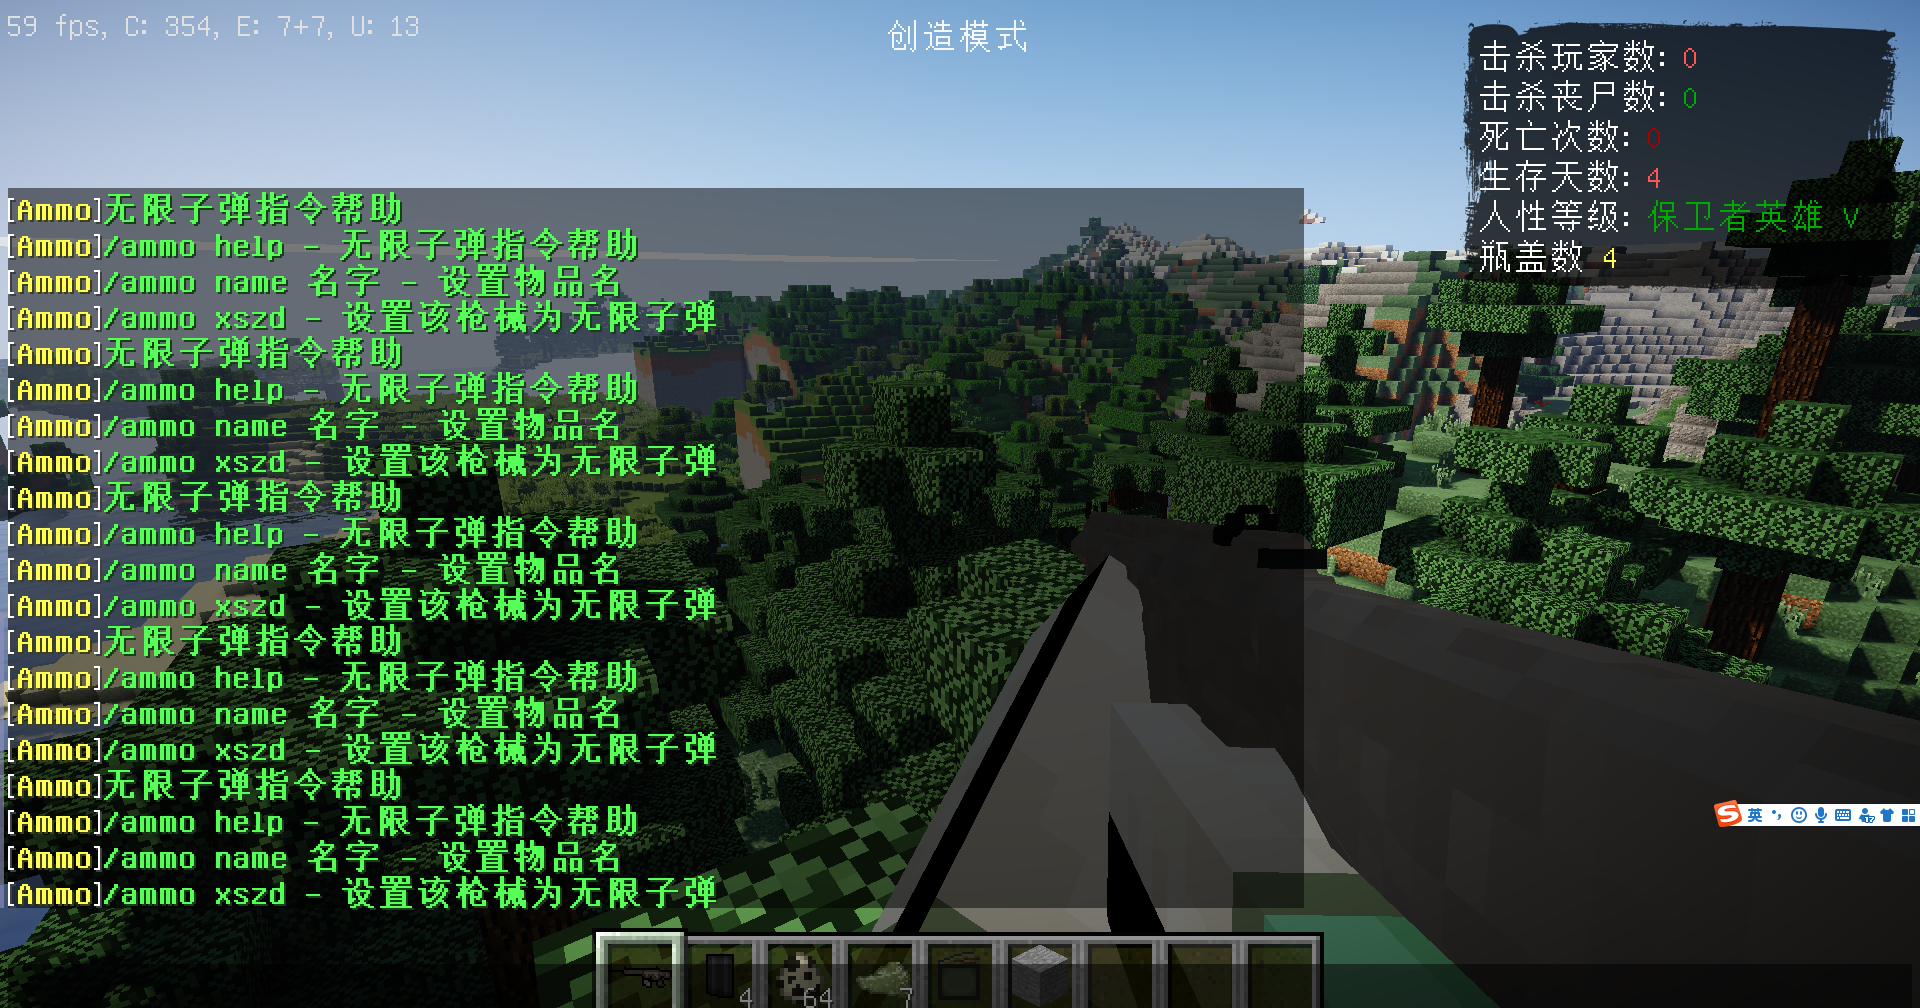 无限子弹 Ammo 我的世界1 7 10版本 Minecraft中文下载站